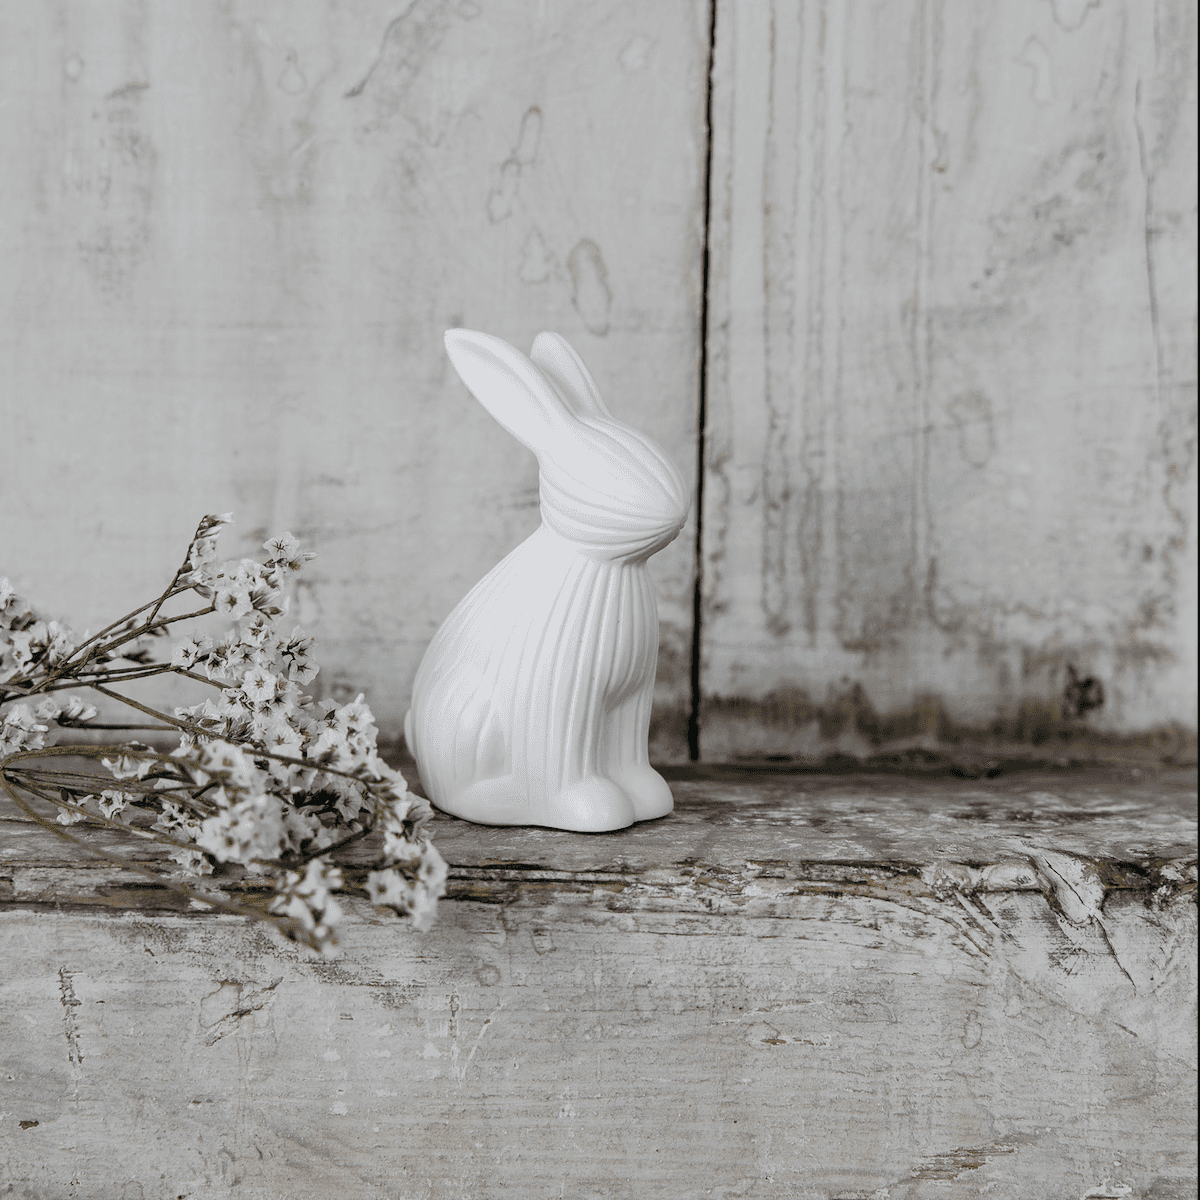 Immagine del prodotto Coniglio Arthur in Ceramica opaca Bianca - 2 misure | Storefactory